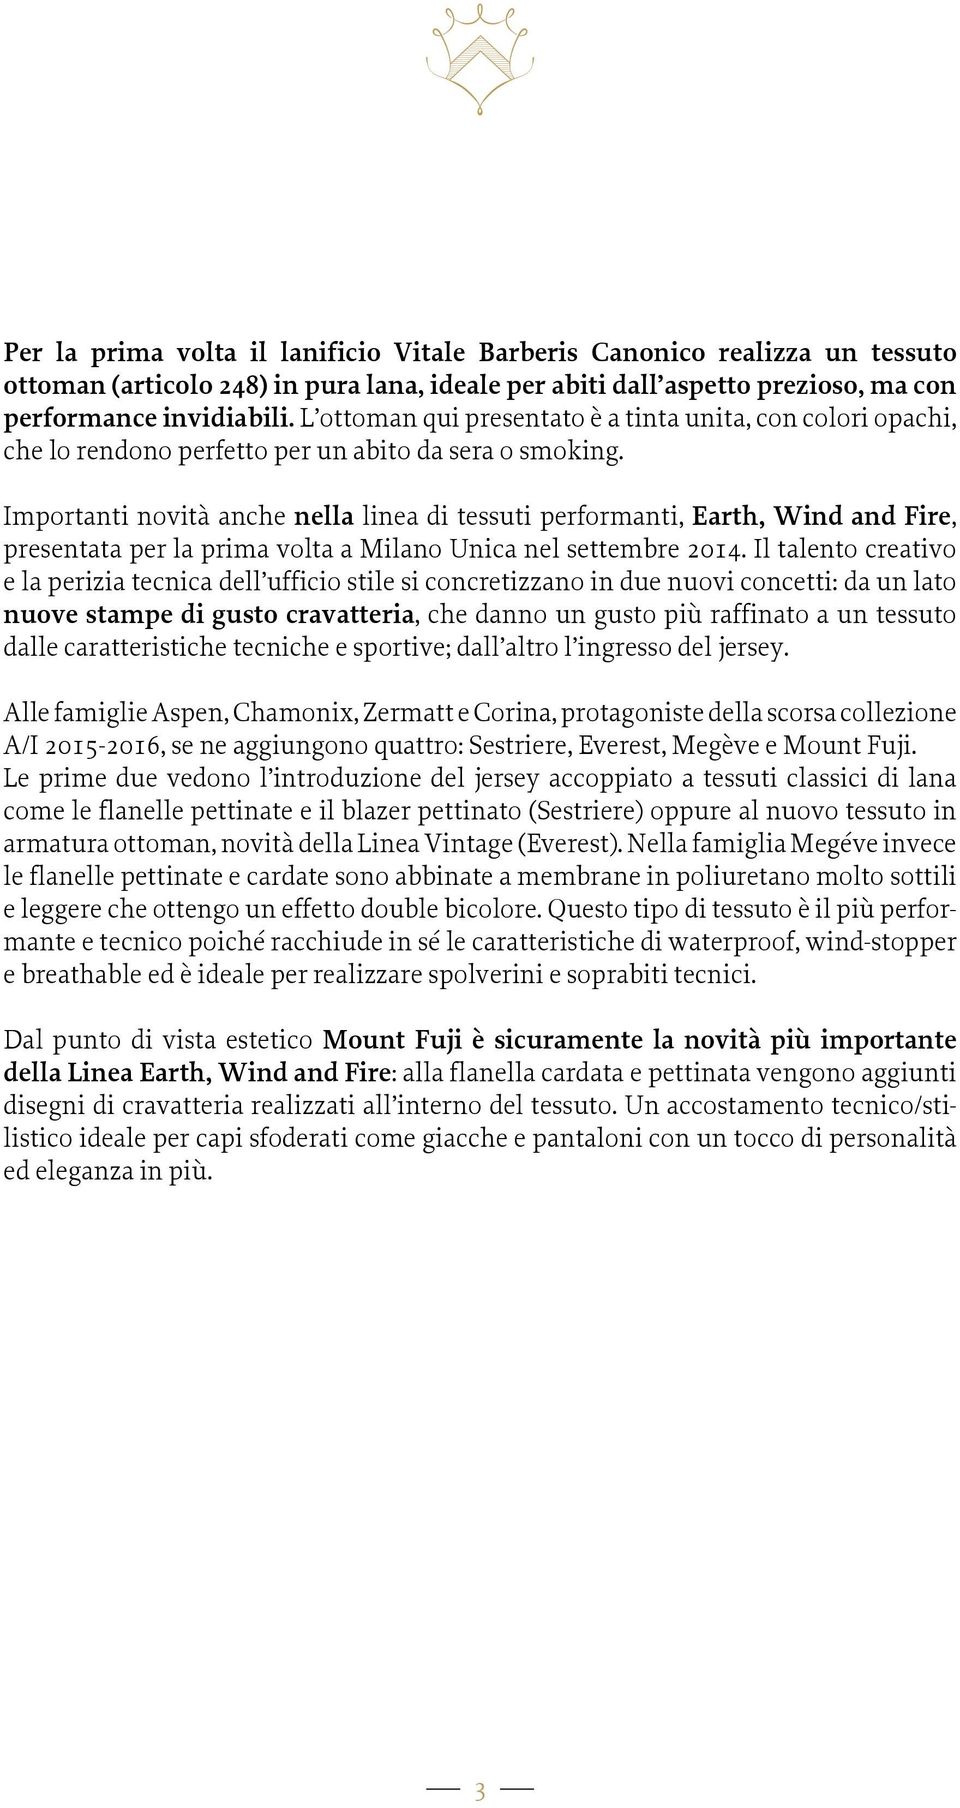 Importanti novità anche nella linea di tessuti performanti, Earth, Wind and Fire, presentata per la prima volta a Milano Unica nel settembre 2014.